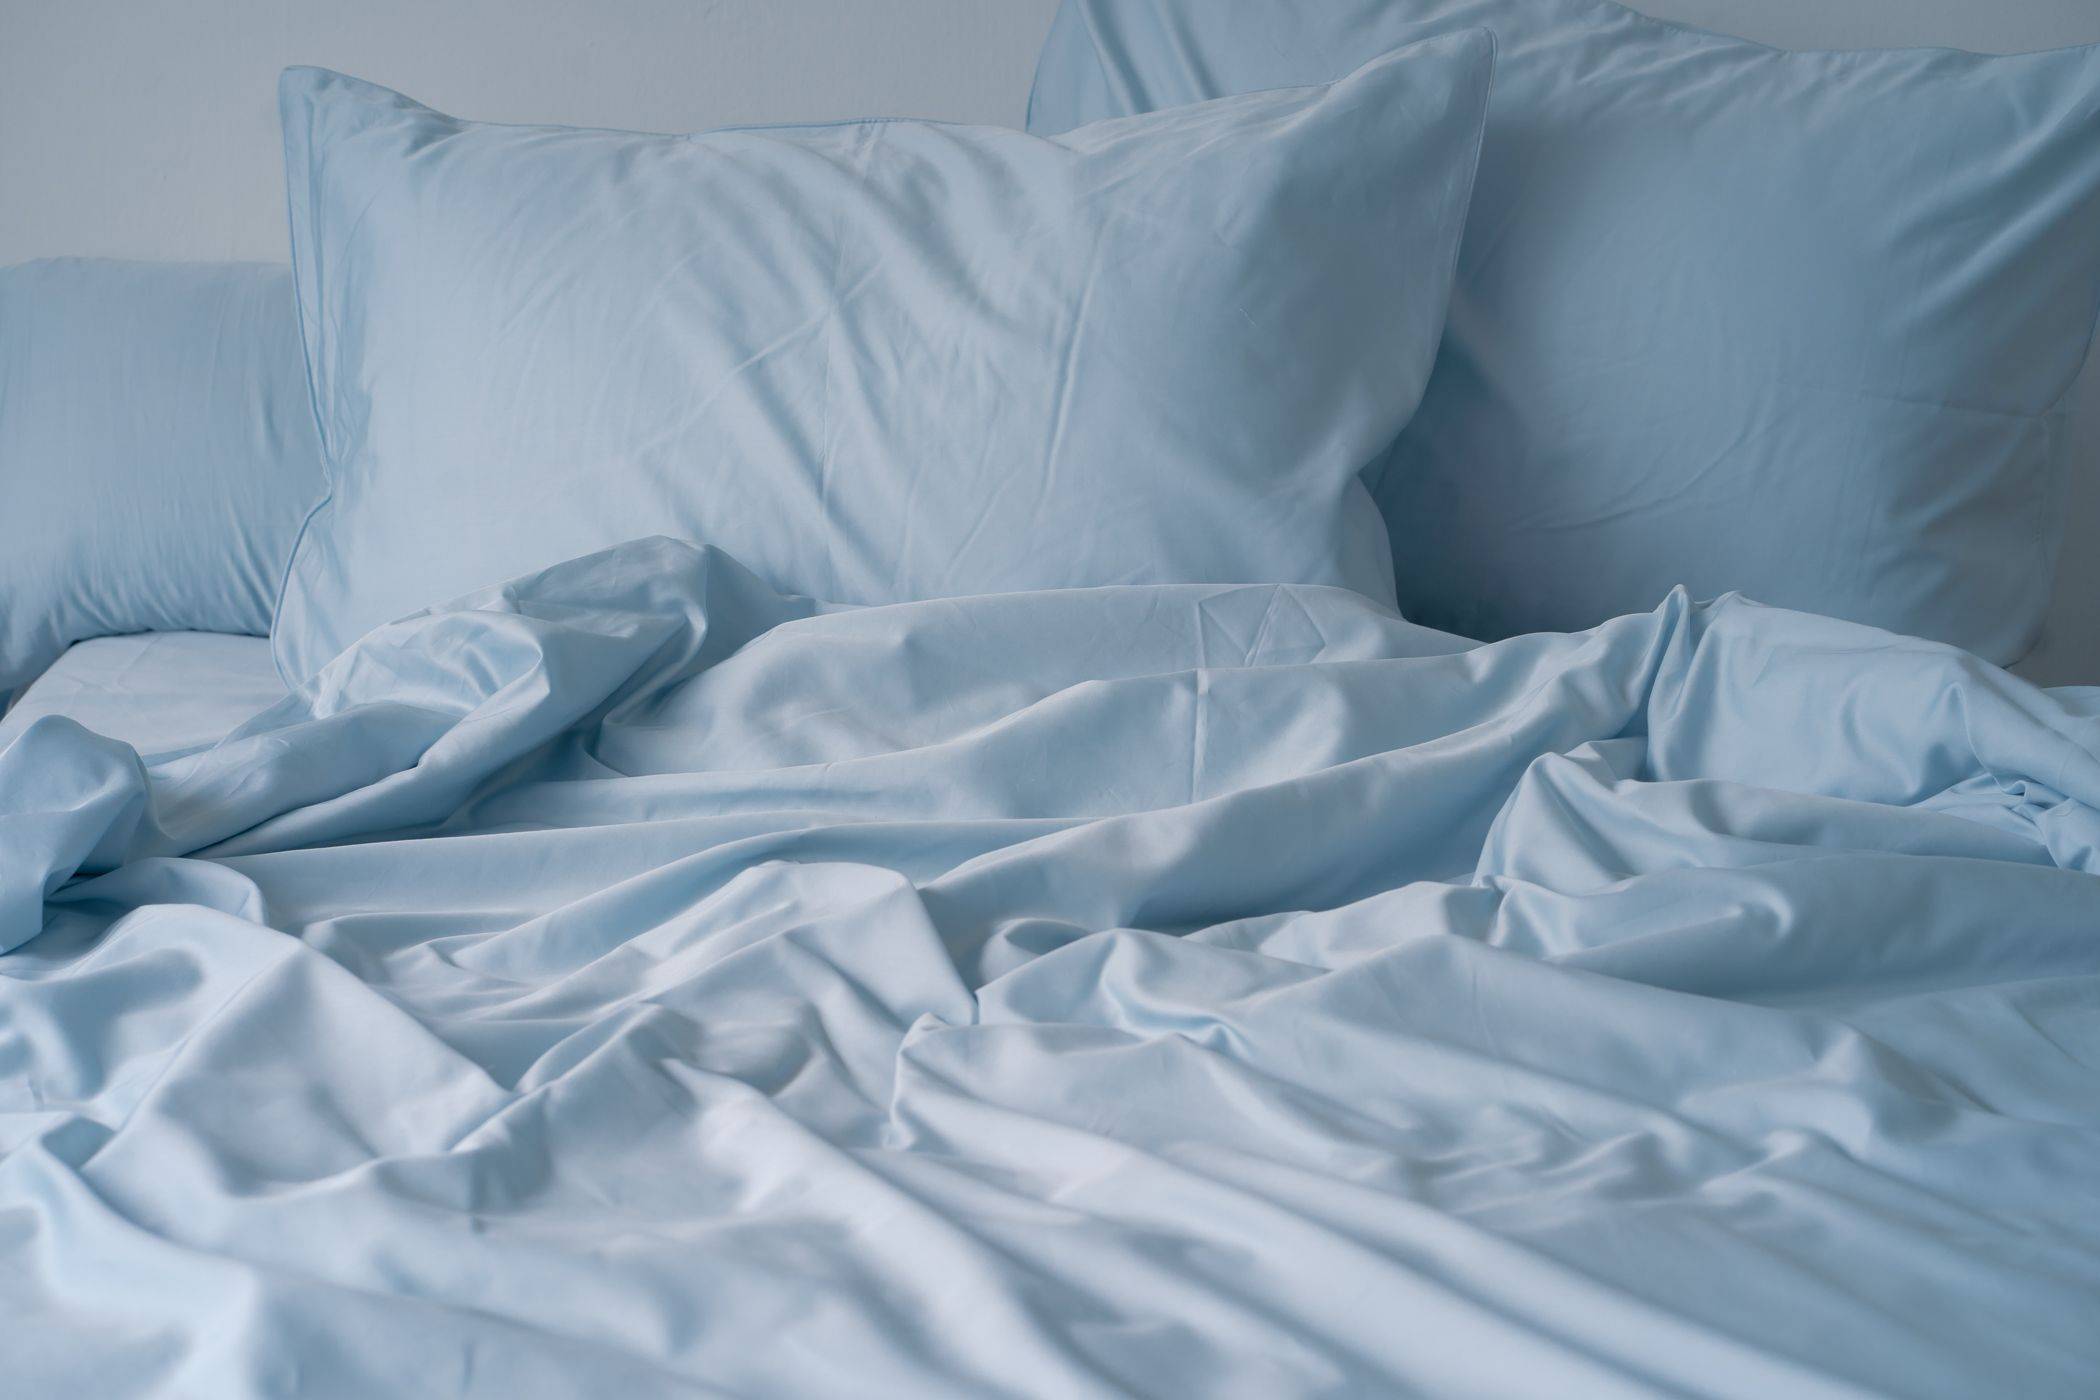 Weavve's light blue cotton bed sheets